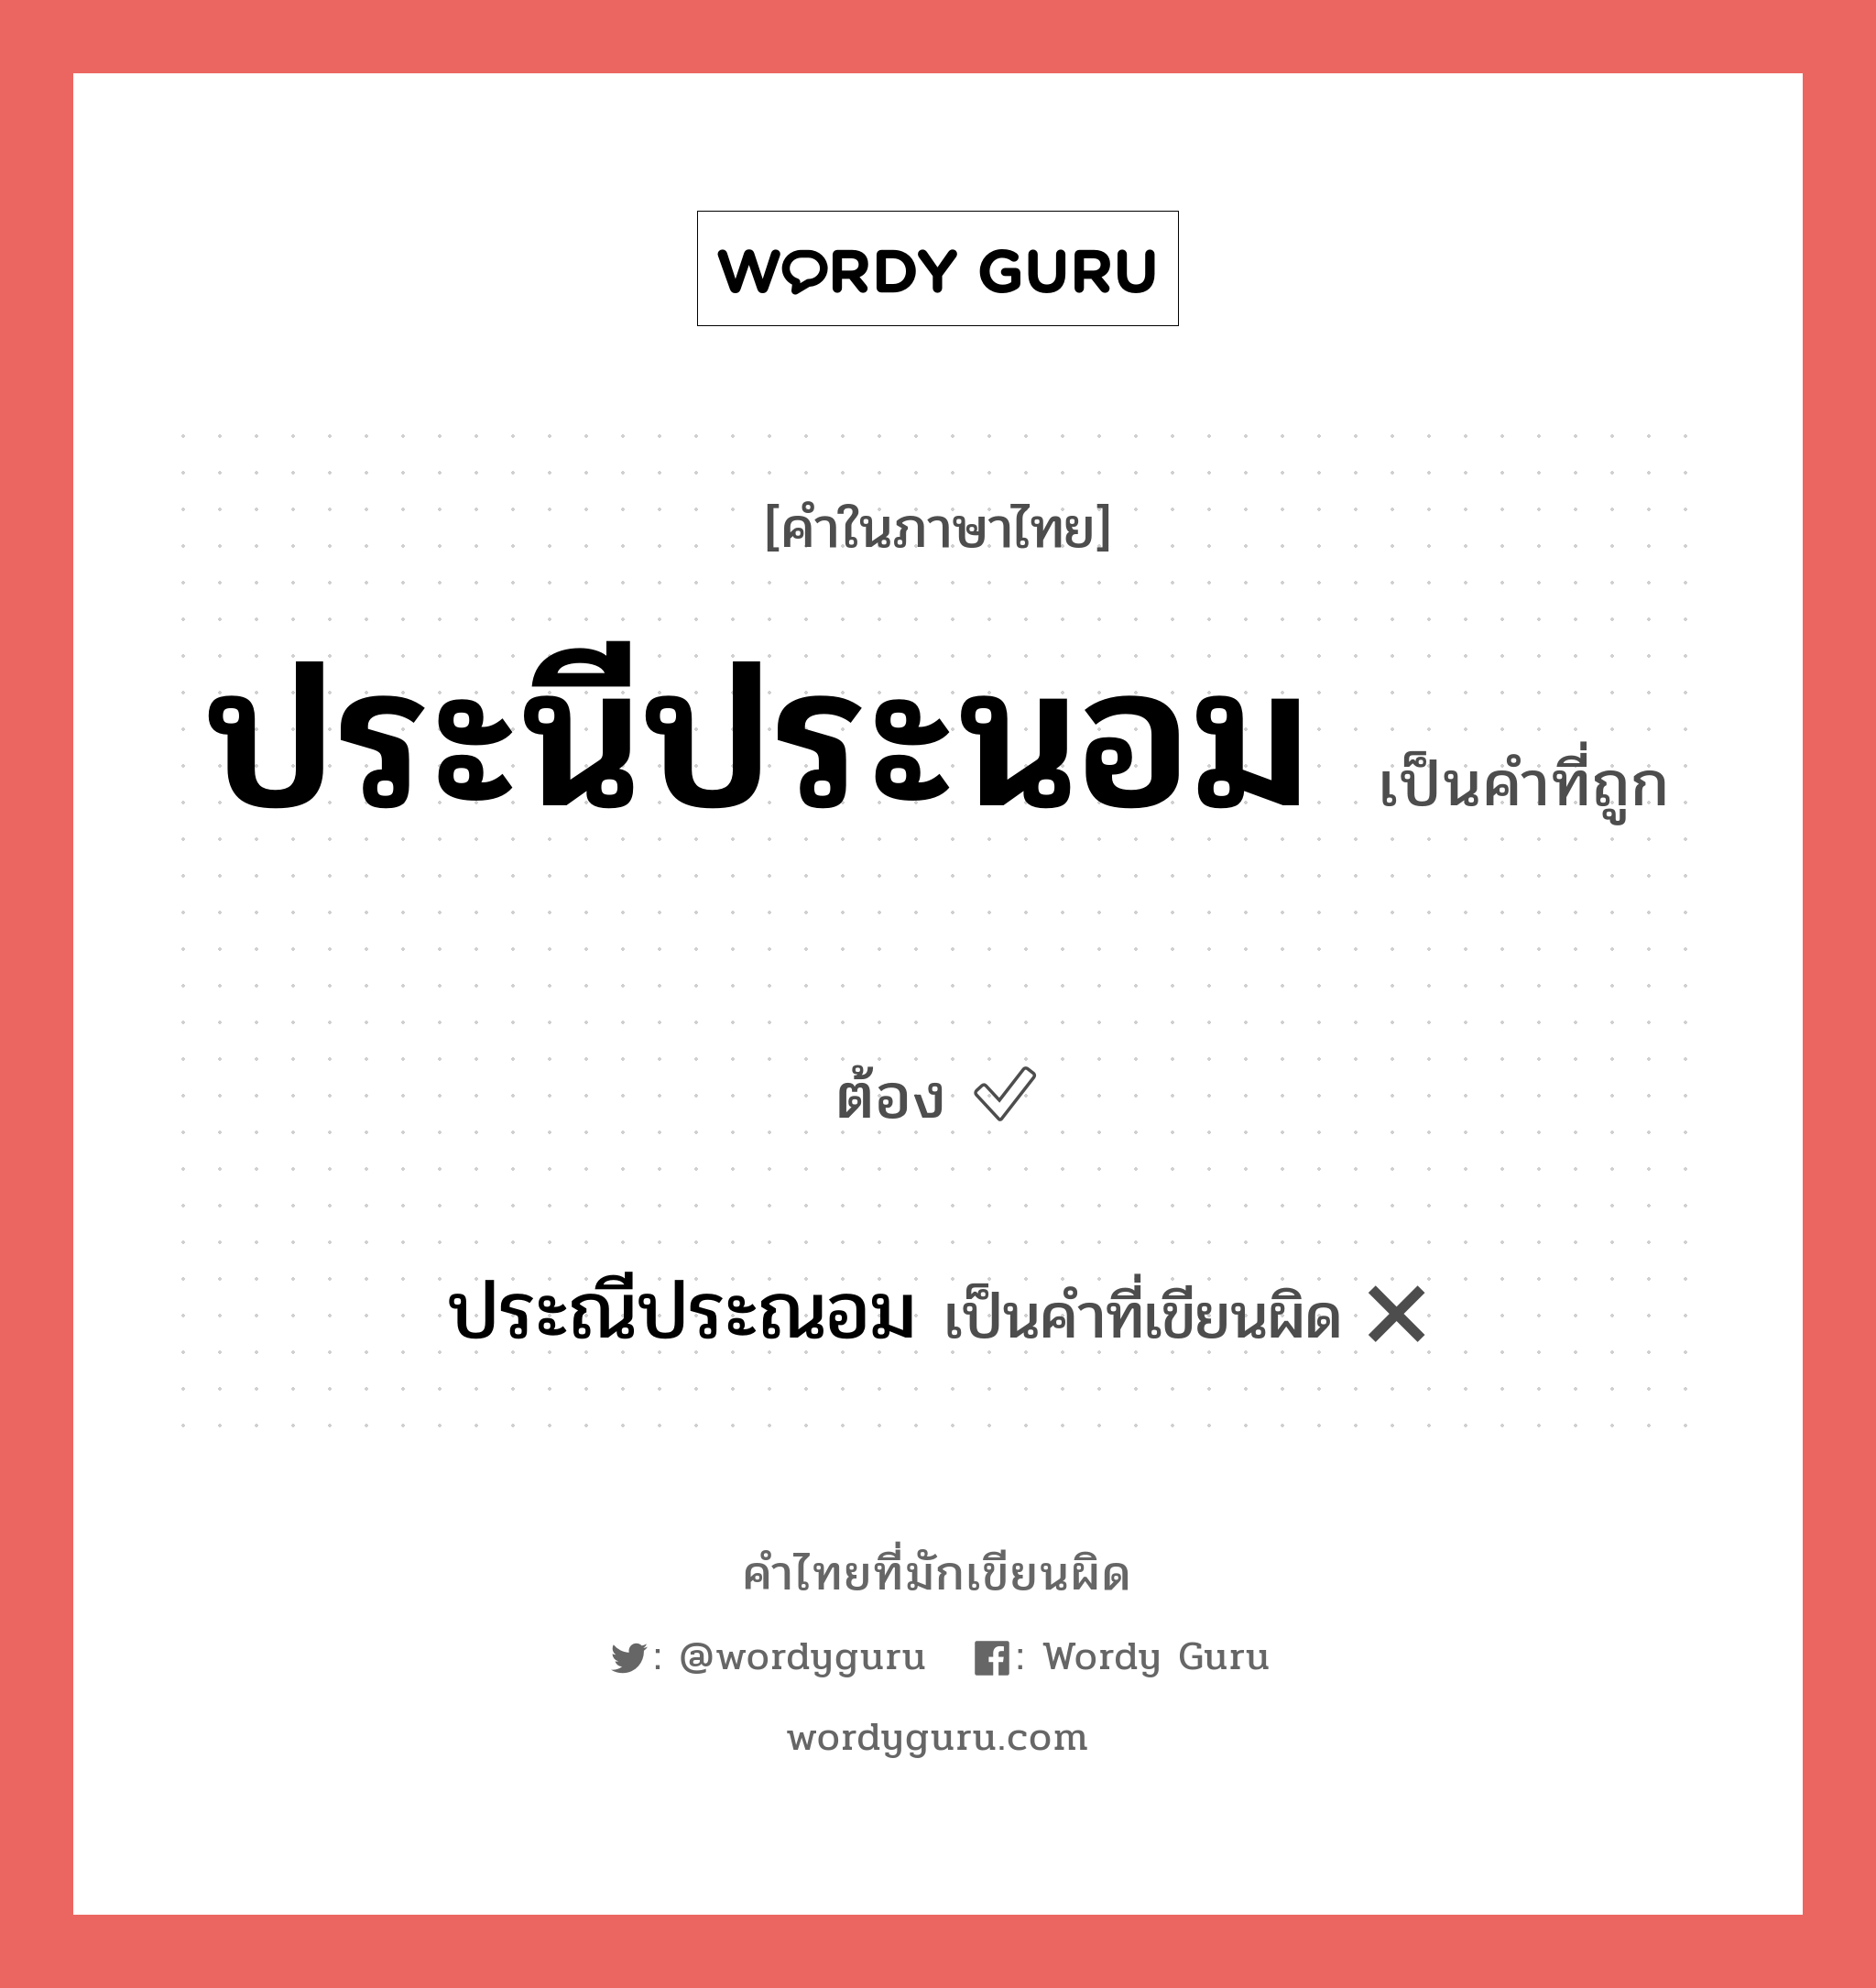 ประนีประนอม หรือ ประณีประณอม คำไหนเขียนถูก?, คำในภาษาไทยที่มักเขียนผิด ประนีประนอม คำที่ผิด ❌ ประณีประณอม